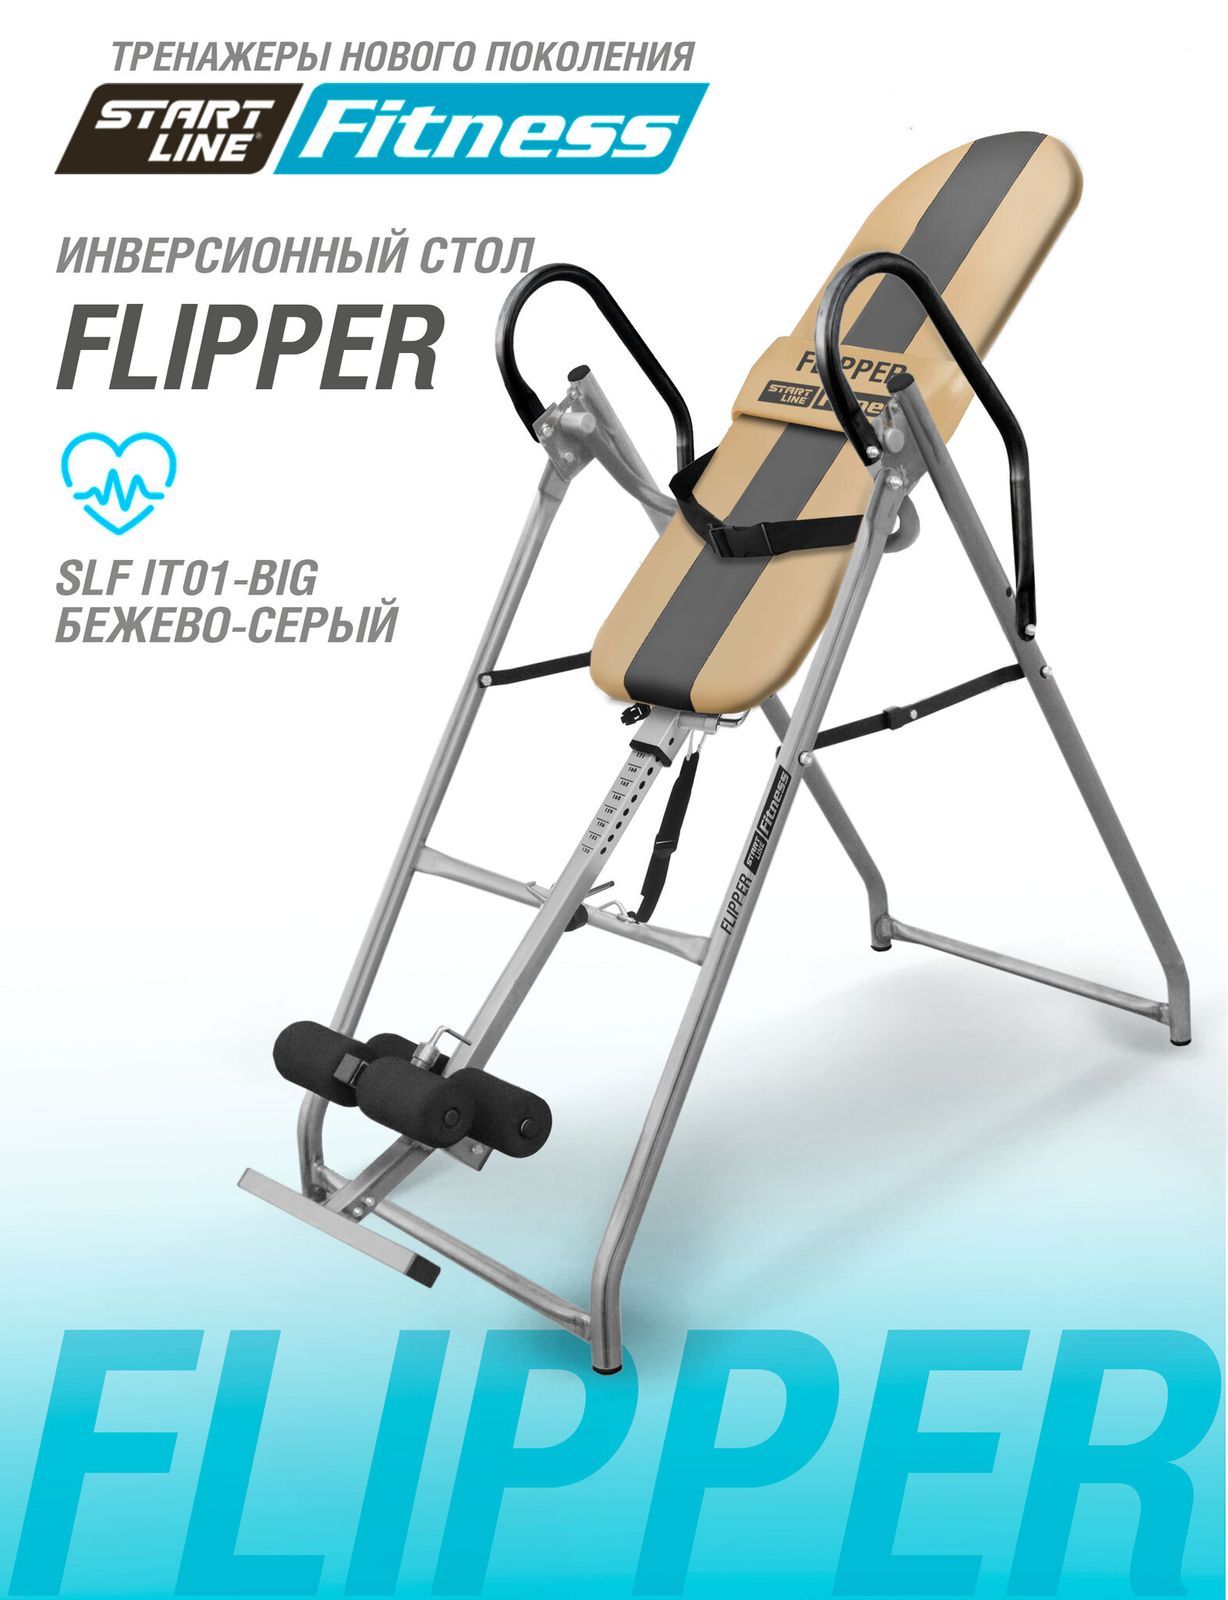 Инверсионный стол FLIPPER бежево-серый c подушкой фото №17